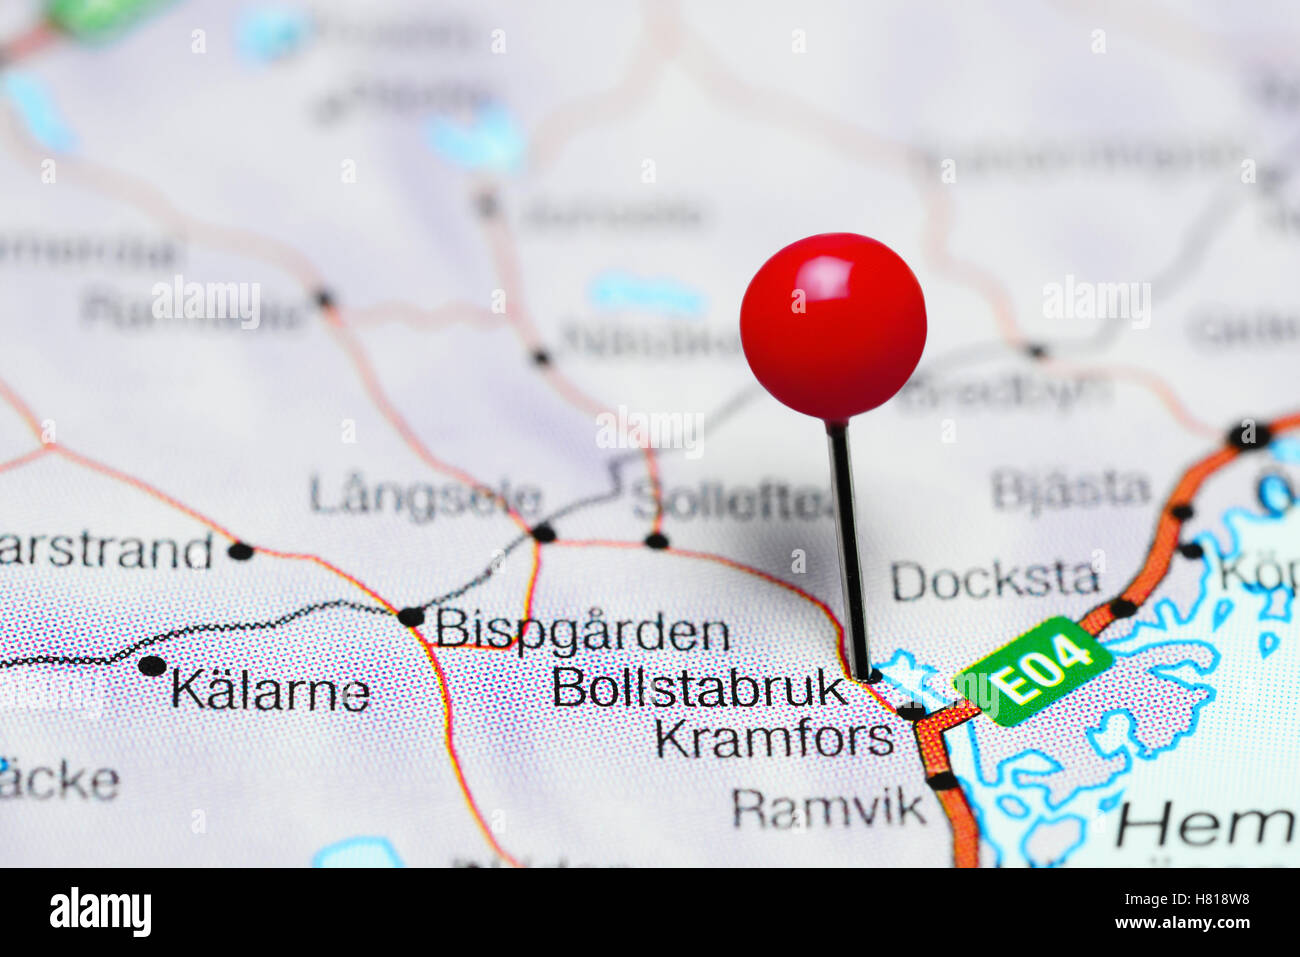 Bollstabruk pinned on a map of Sweden Stock Photo